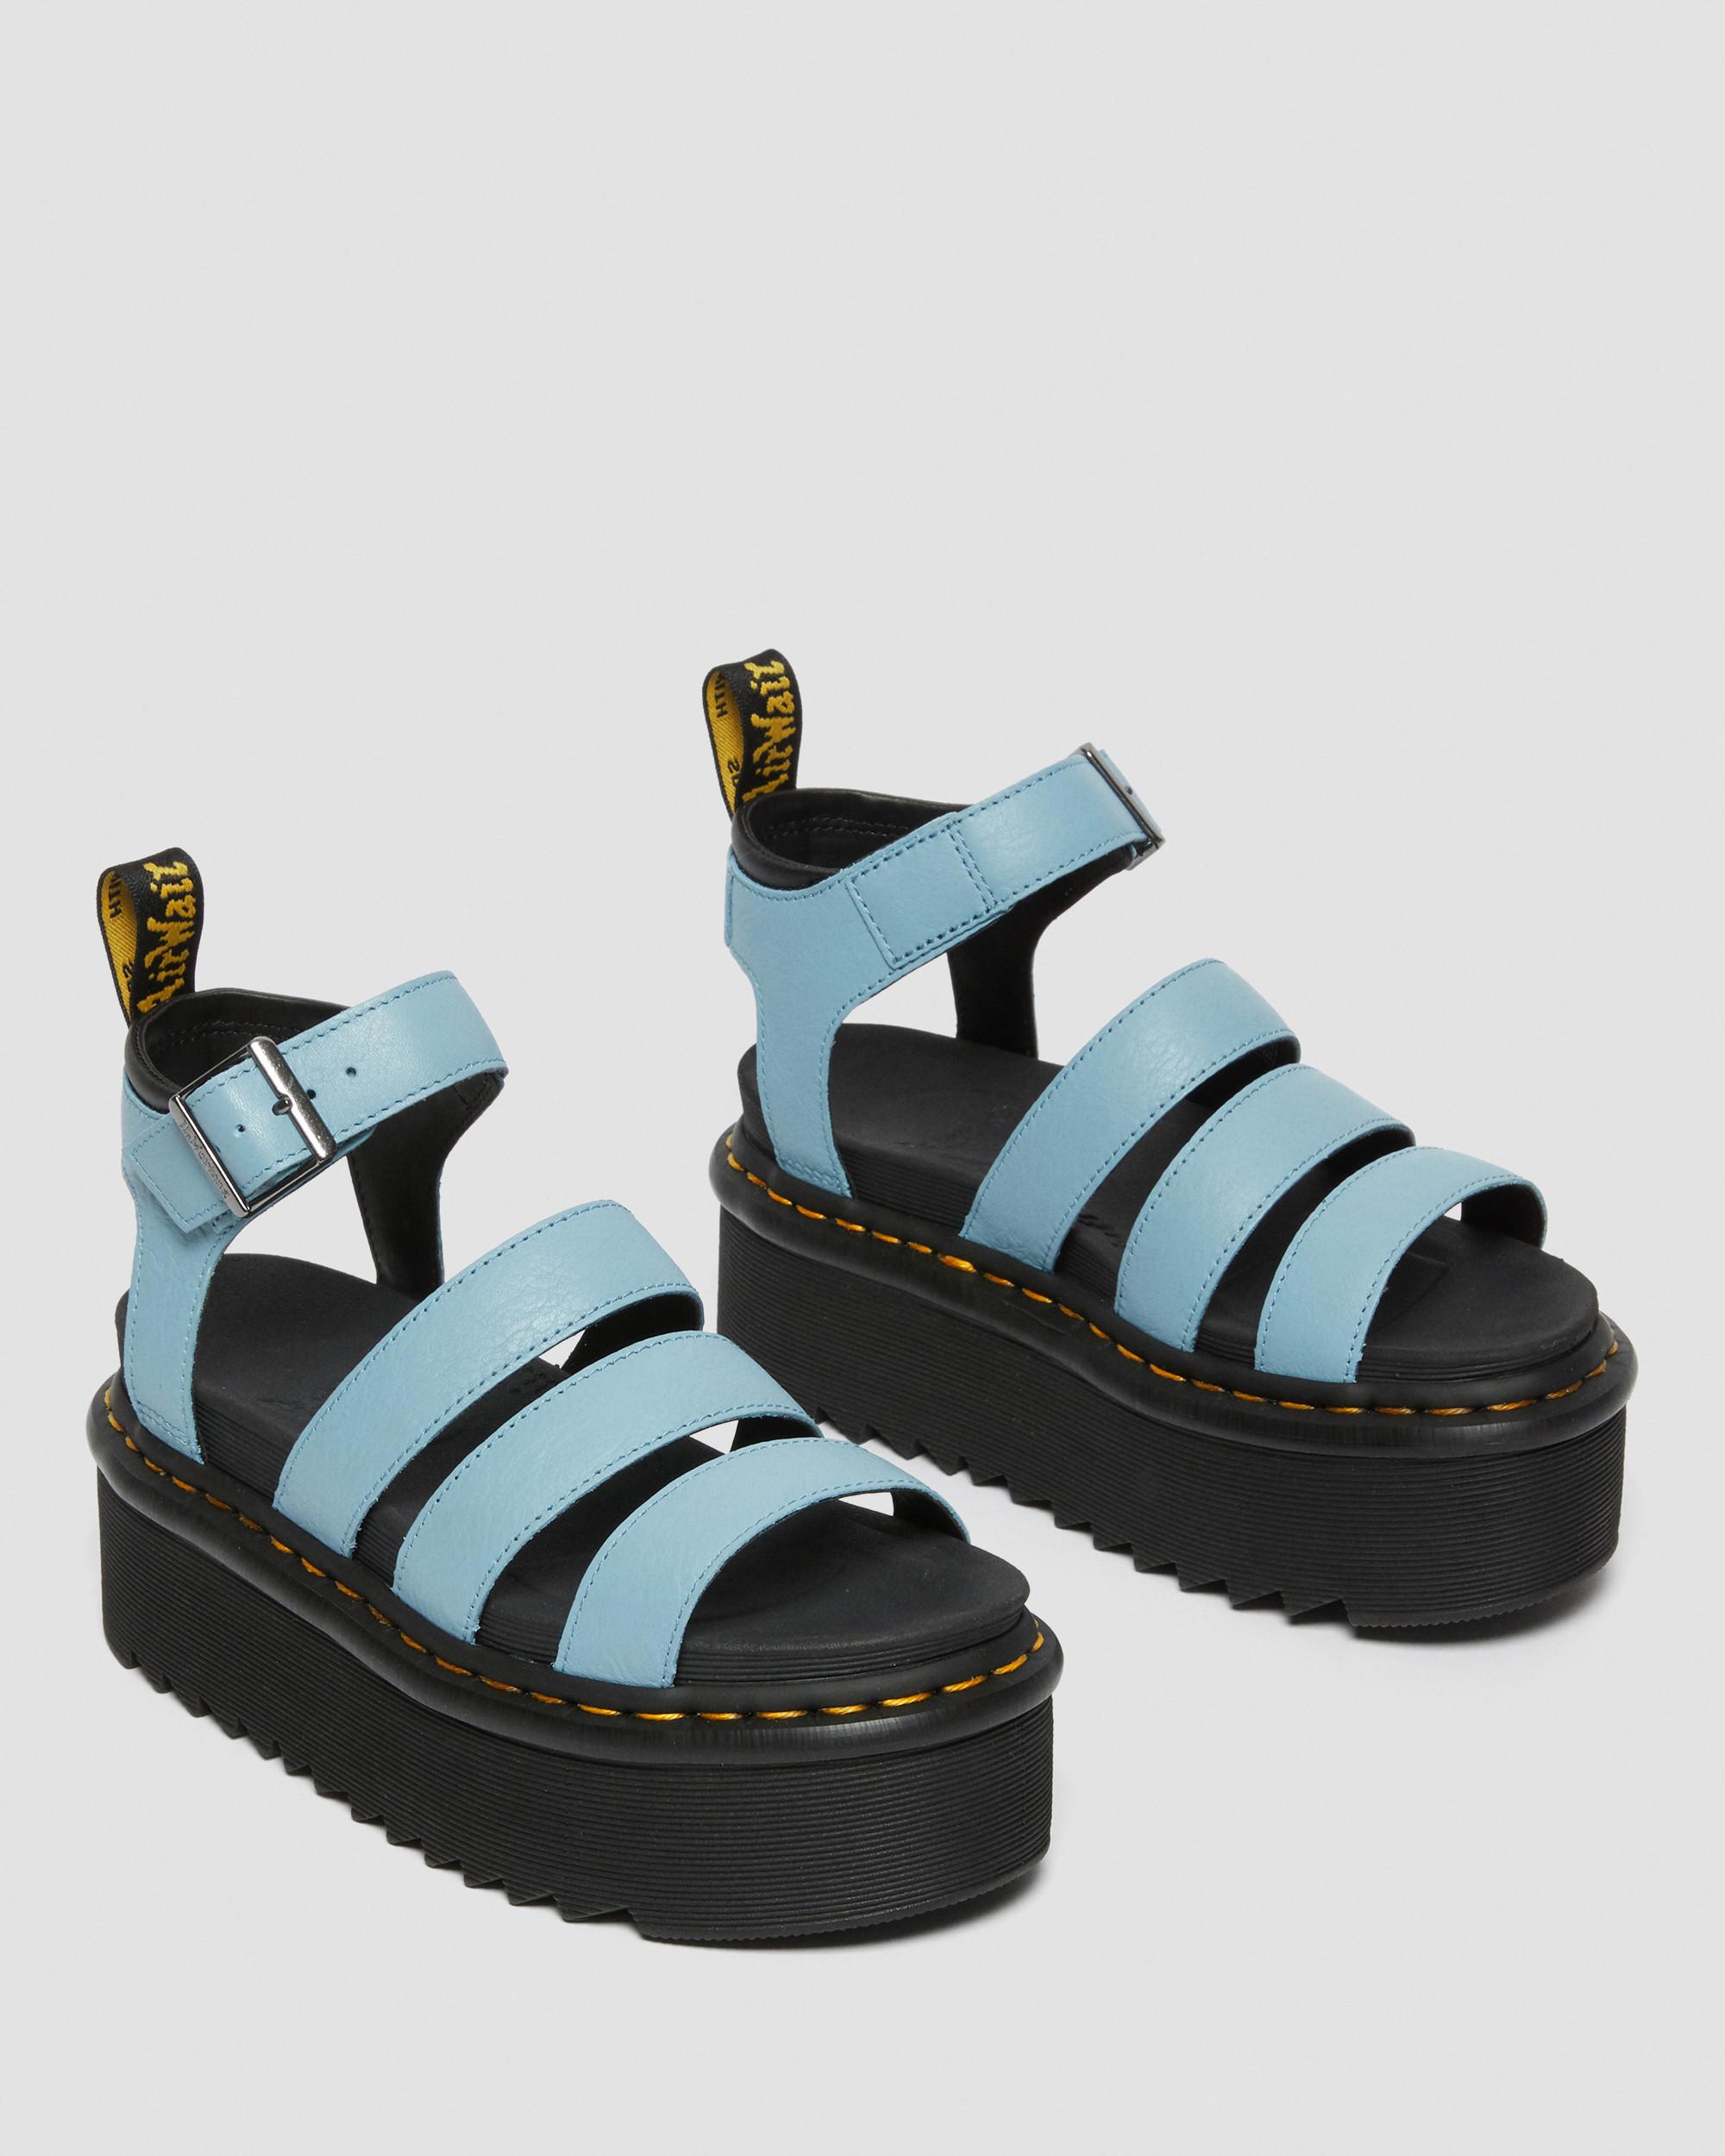 Blaire Quad Pisa Leather Strap Platform Sandals in Blue